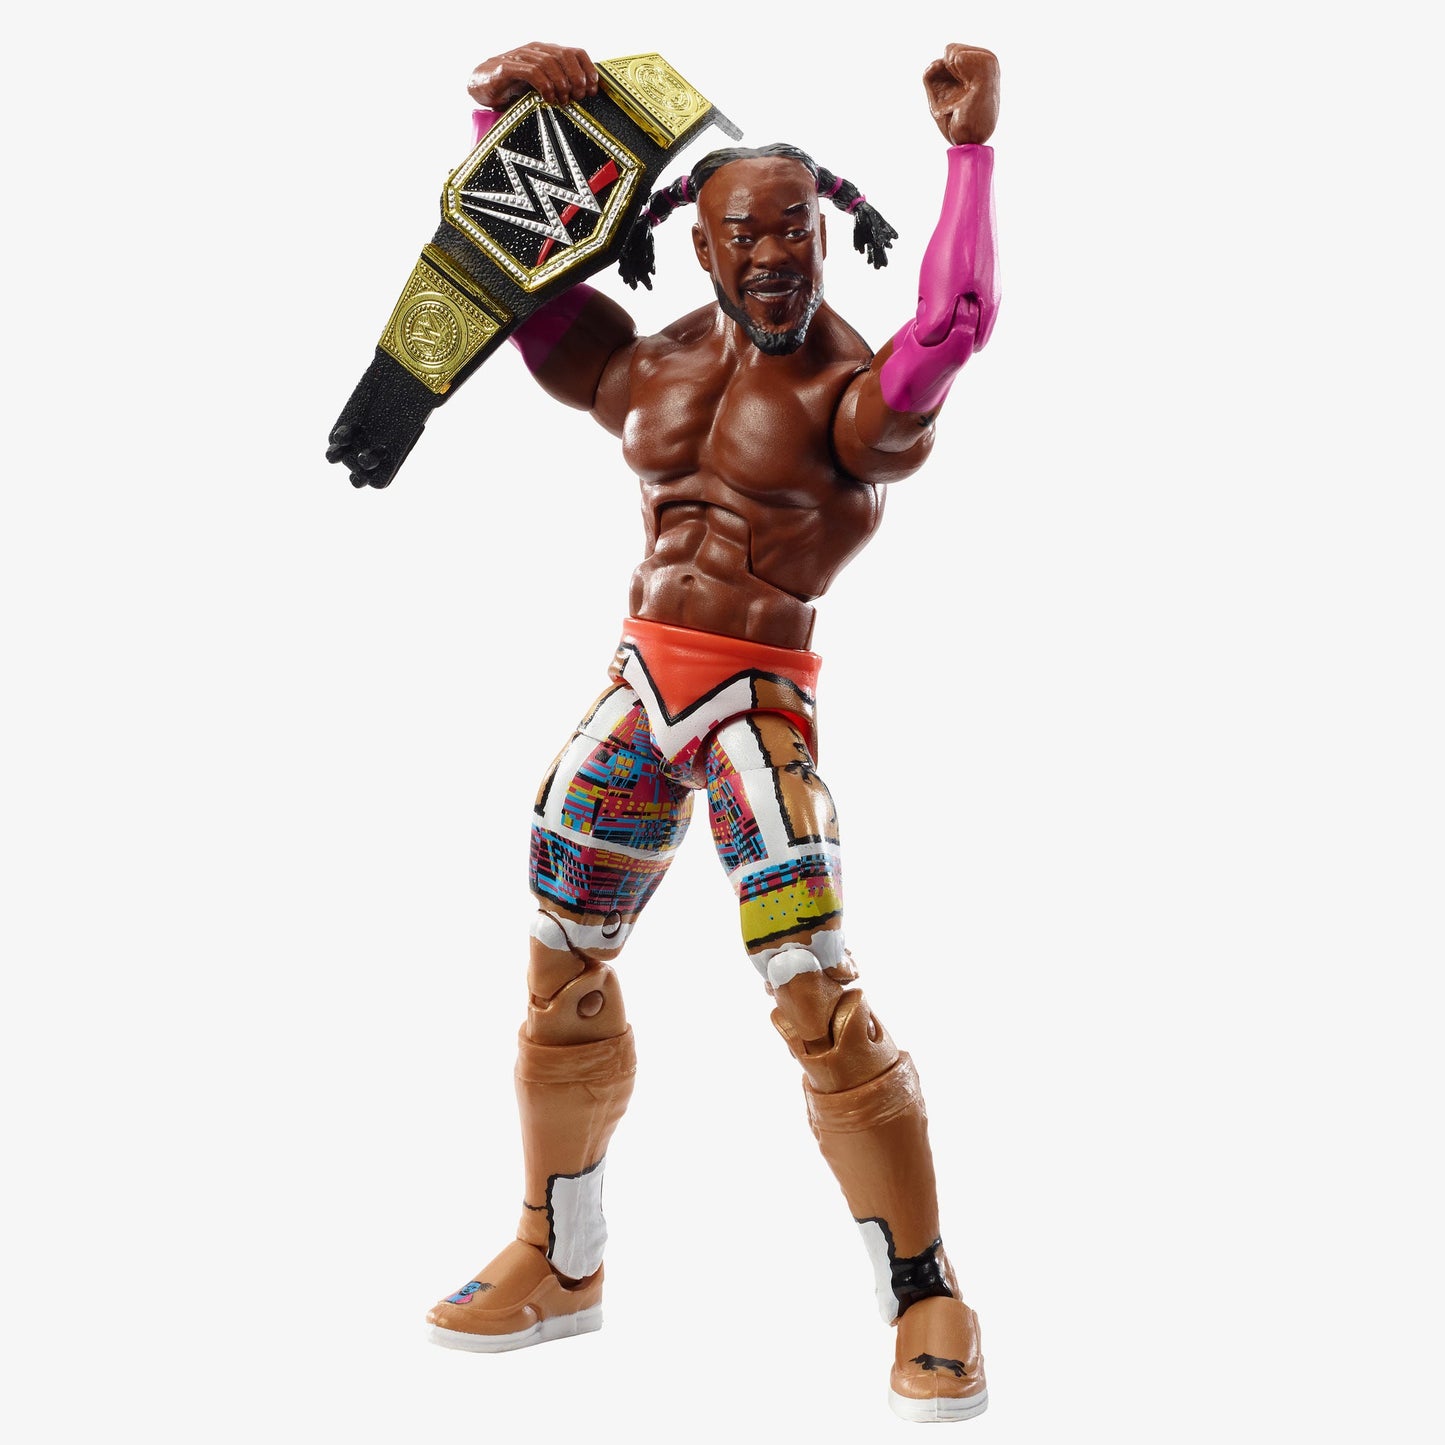 Kofi Kingston WWE WrestleMania 36 Elite Collection